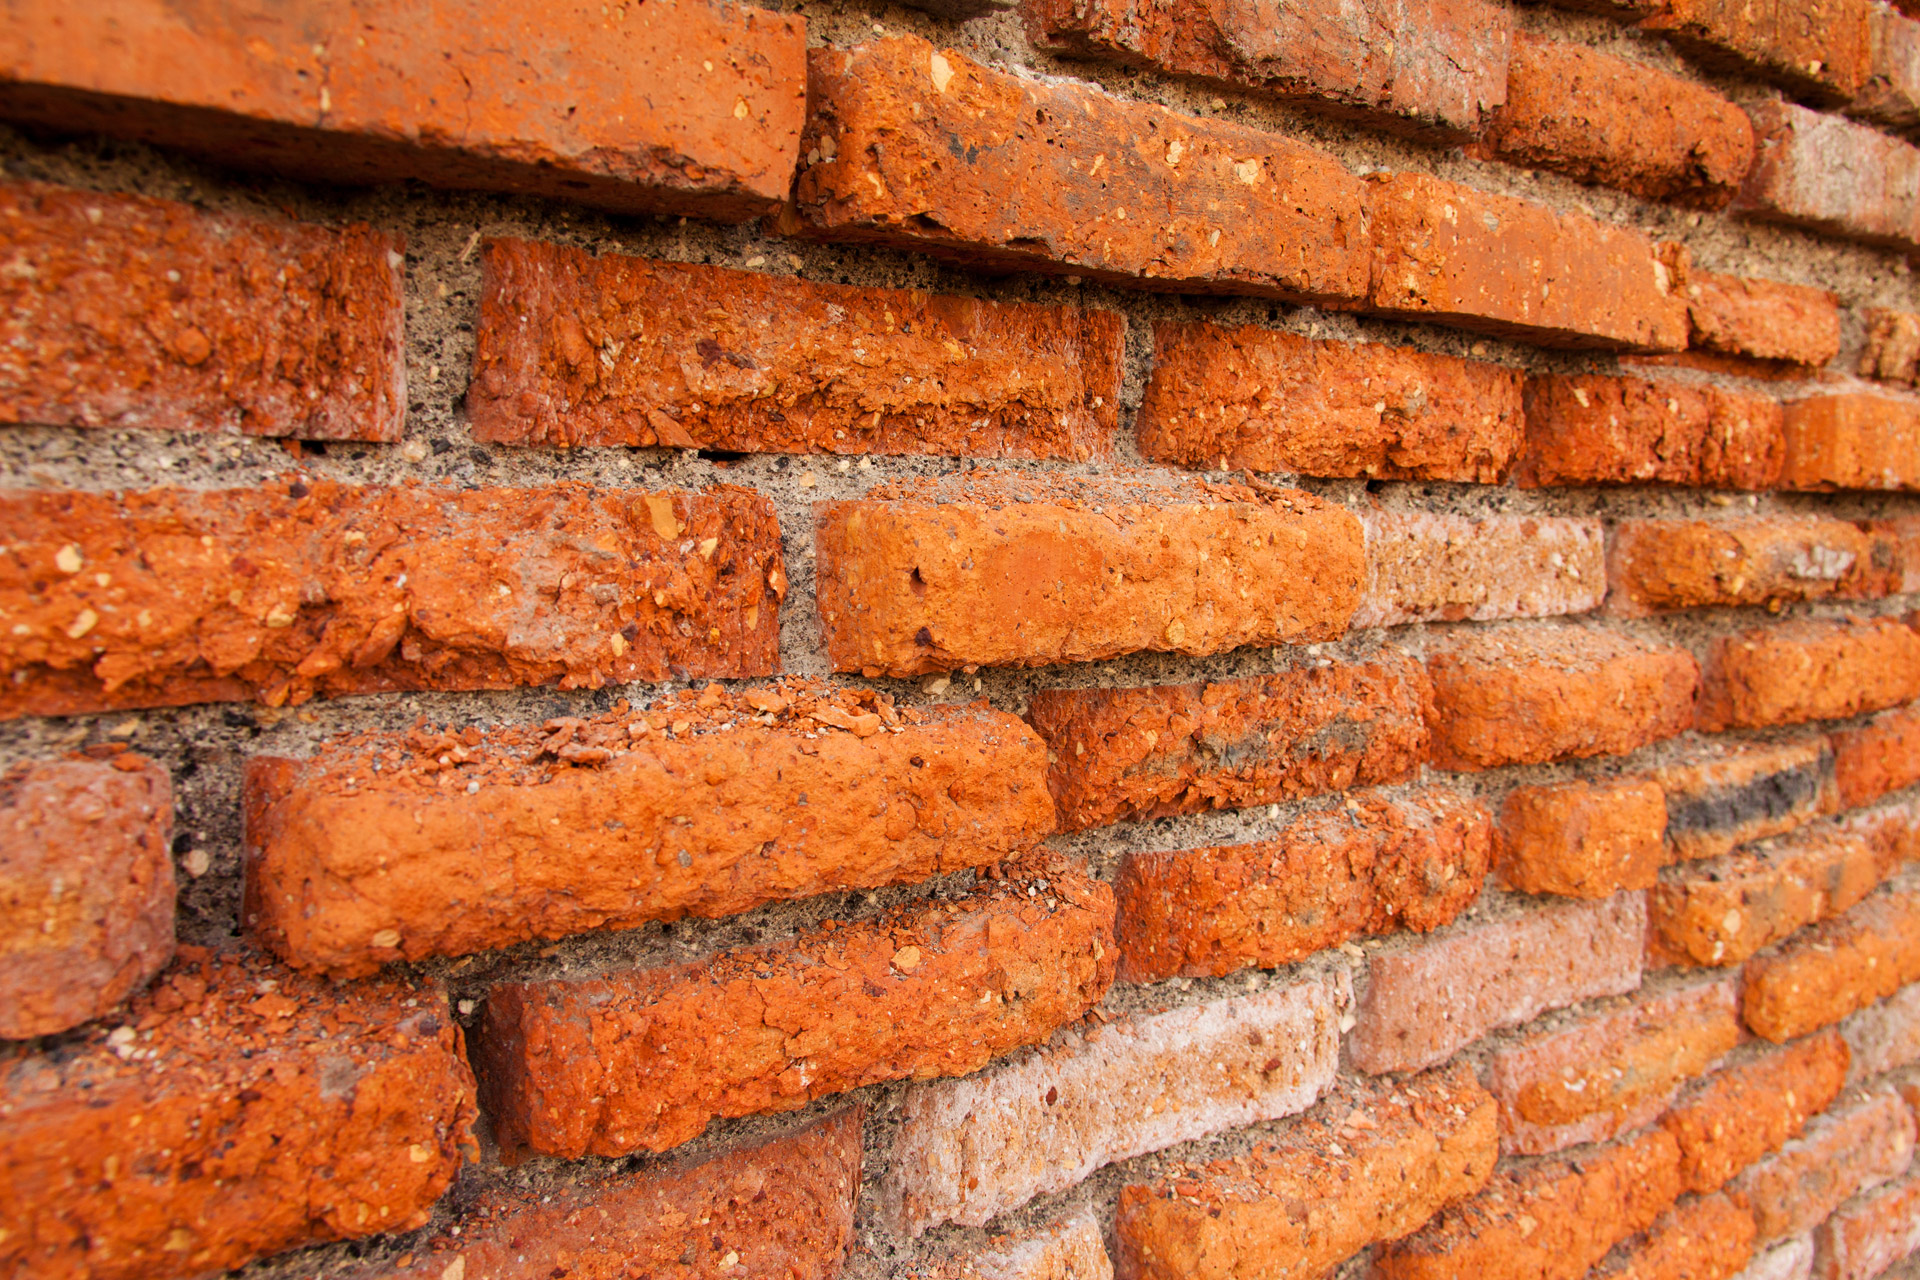 Red Brick Wall At An Angle